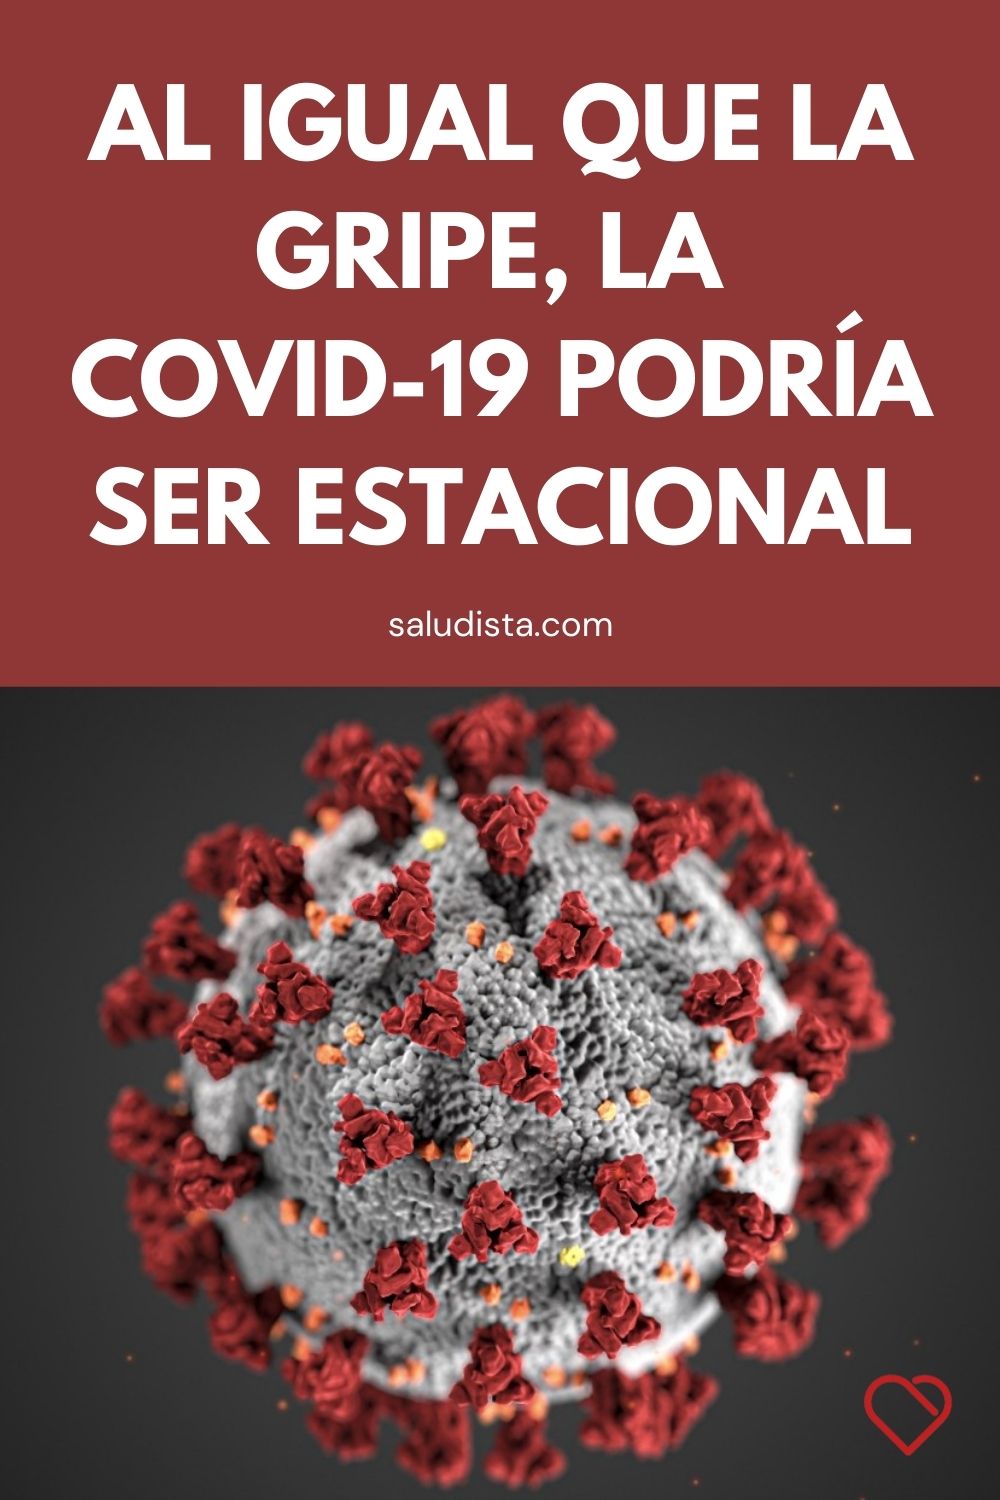 Al igual que la gripe, la COVID-19 podría ser estacional